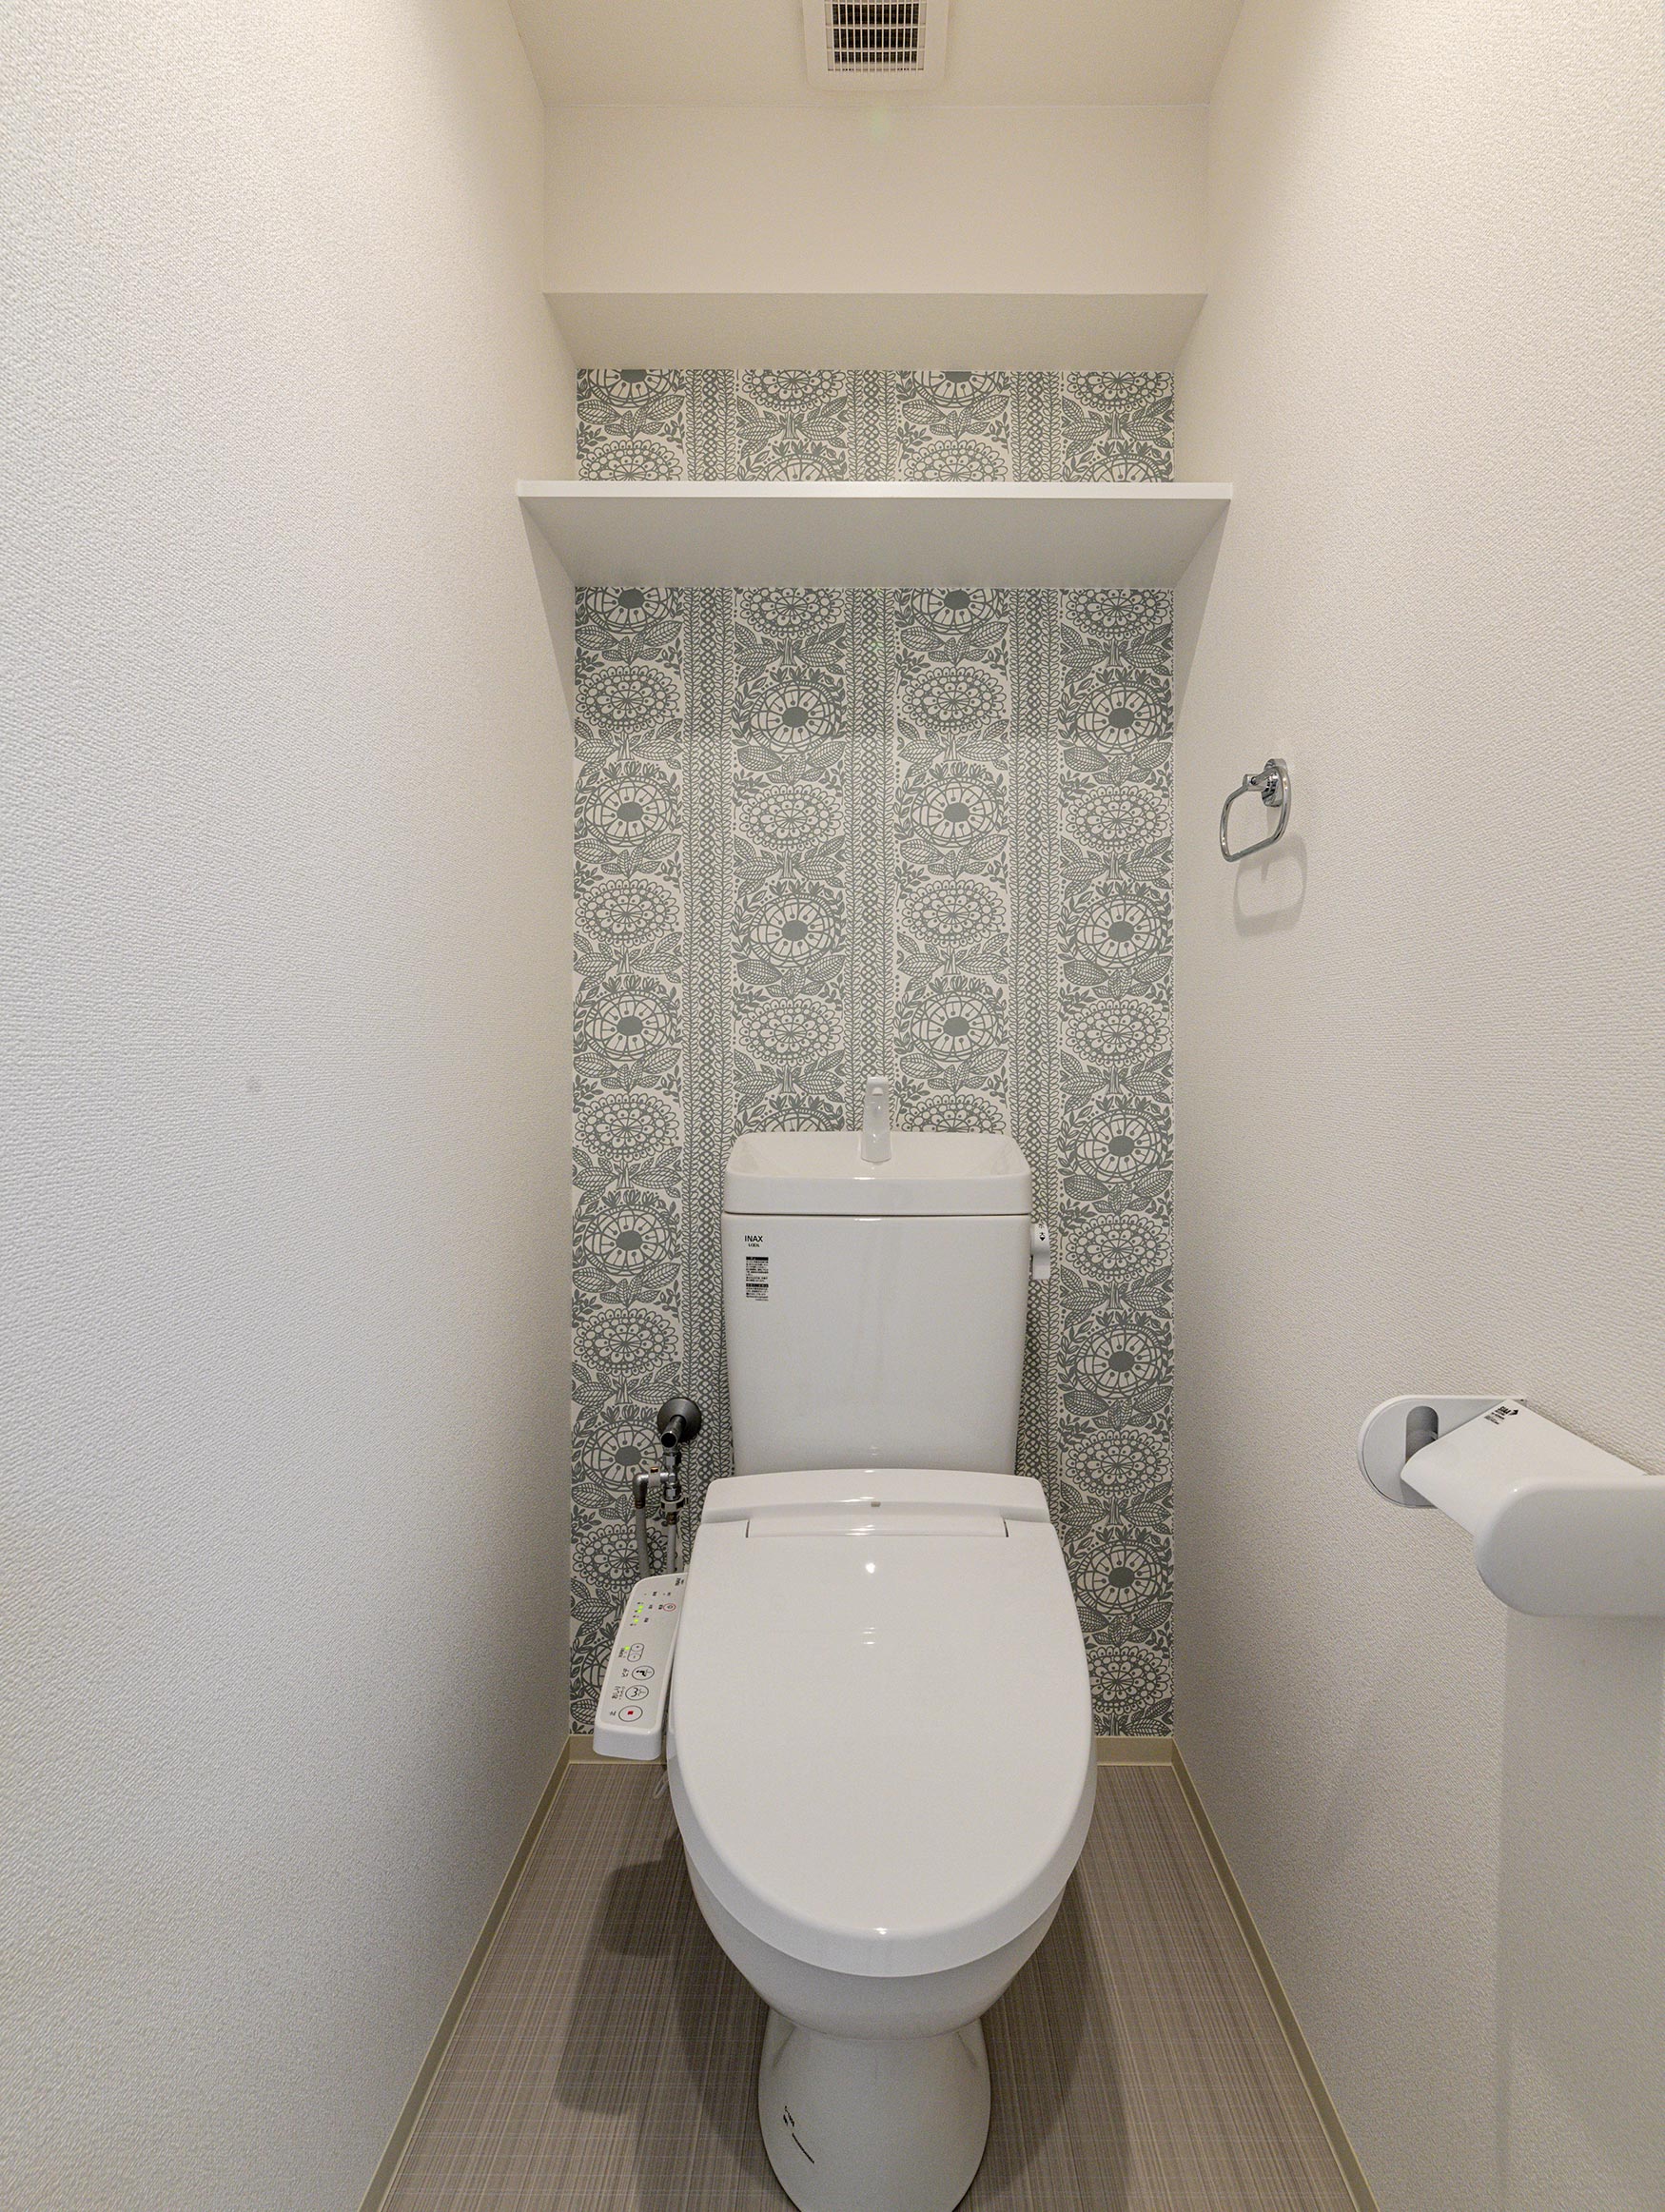 愛知県小牧市のレトロとモダンを組み合わせたデザインの賃貸マンションの棚の付いたモダンな壁紙のトイレ